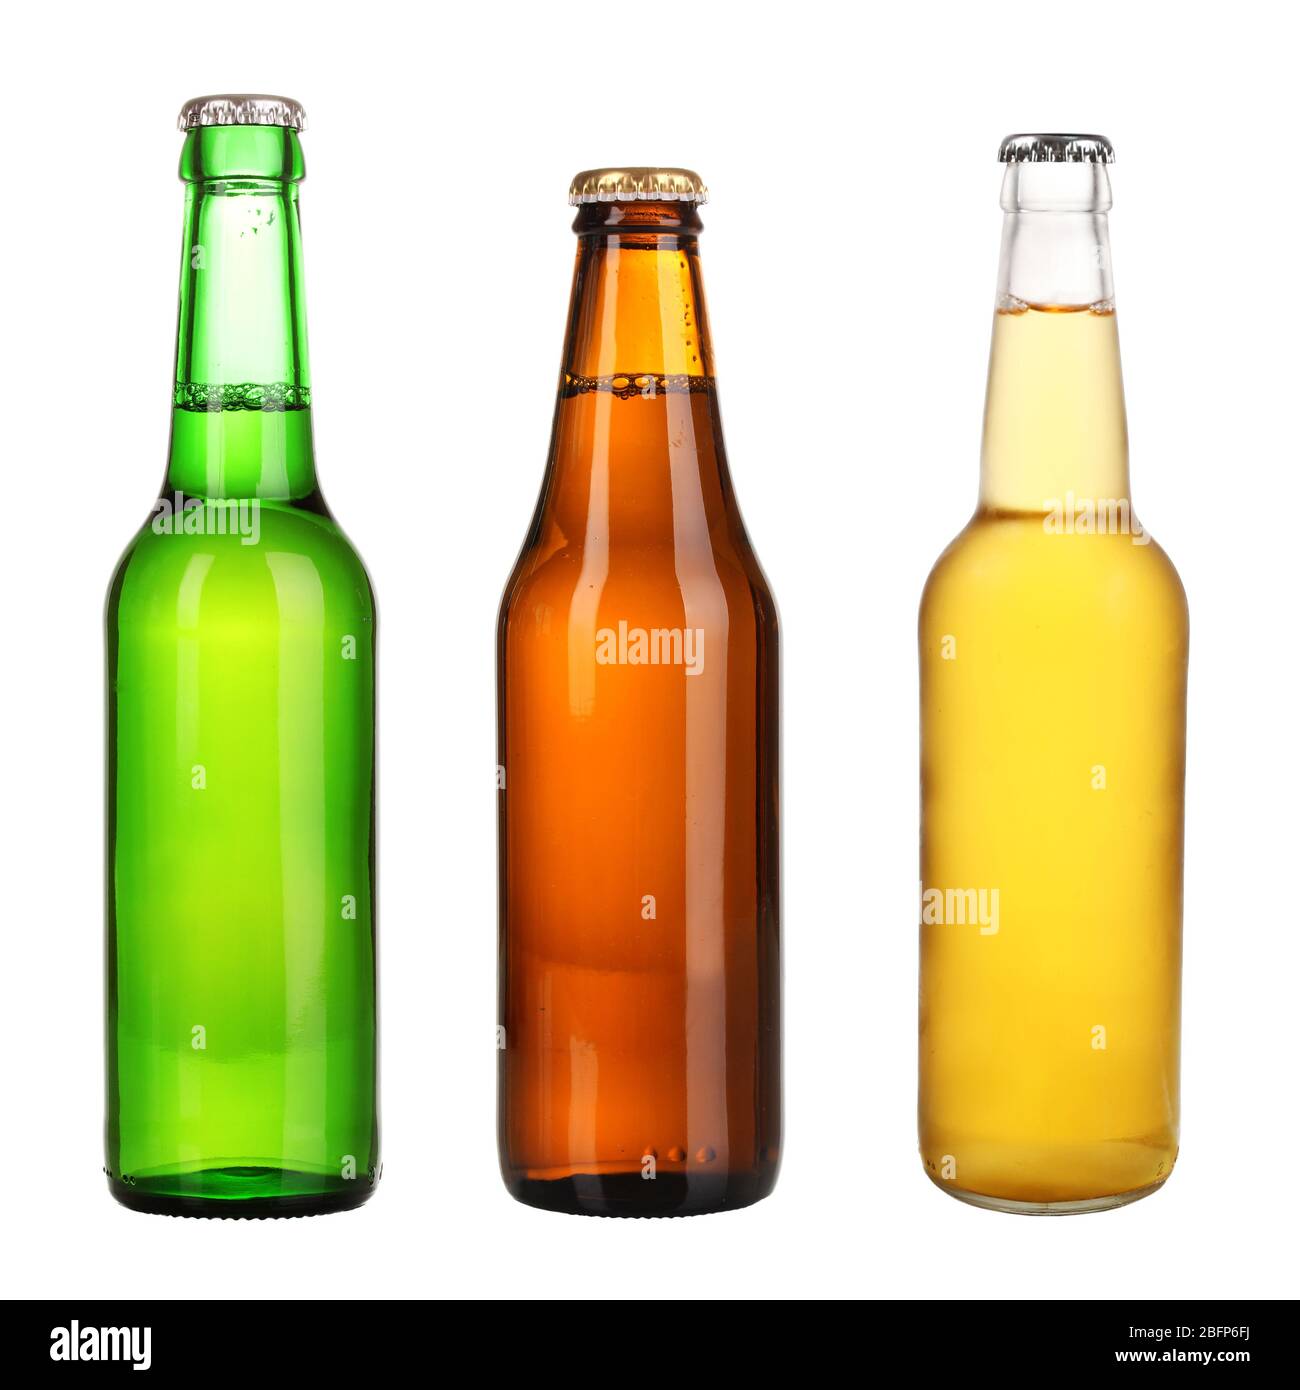 https://c8.alamy.com/comp/2BFP6FJ/bottles-of-different-beer-isolated-on-white-2BFP6FJ.jpg